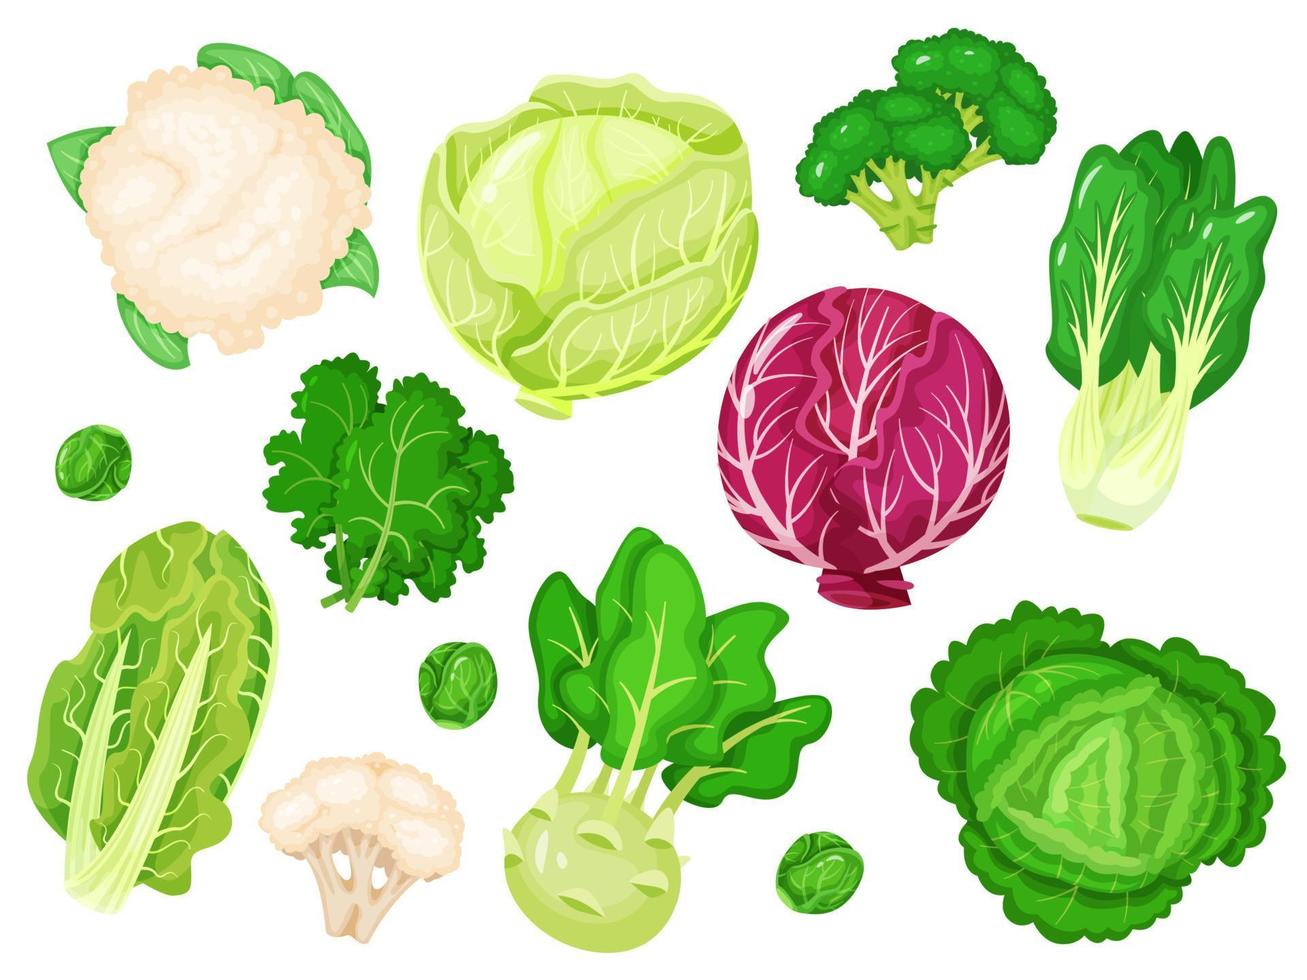 dibujos animados coles Fresco lechuga, brócoli, col rizada hojas, coliflor, blanco y rojo repollo. varios tipos de sano verde vegetales vector conjunto